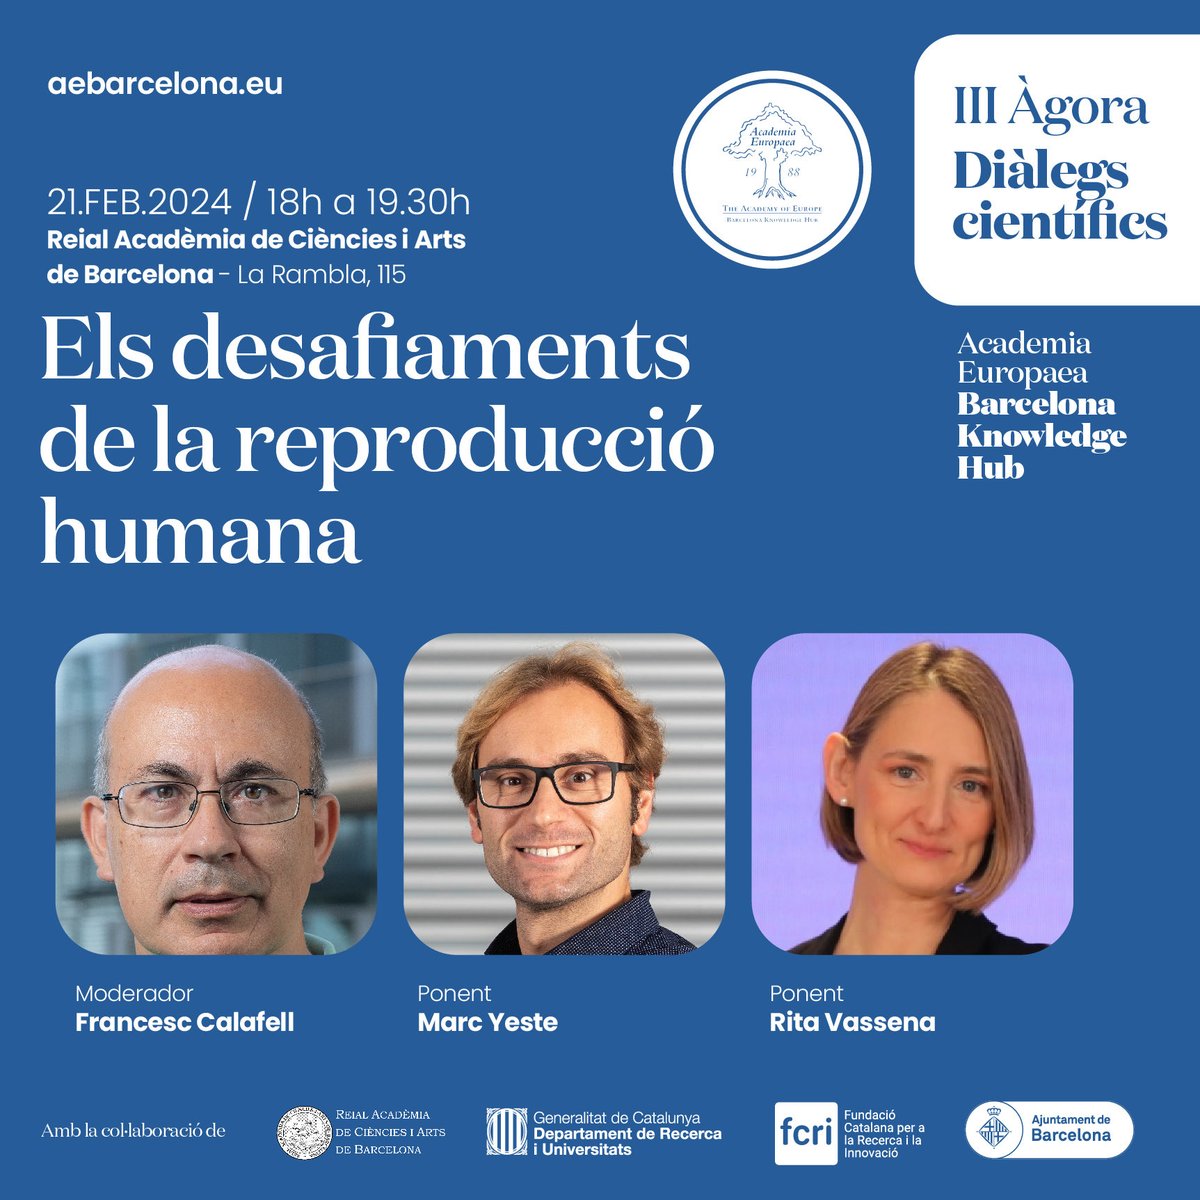 Vine al III ÀGORA diàleg científic! 🗓️21 de febrer de 18 a 19.30 hores 📍RACAB, La Rambla,115, Barcelona T’esperem! #AE #reproducció #ciència ⁦⁦@Francescalafell⁩ ⁦@RitaVassena⁩ ⁦@MarcYeste⁩